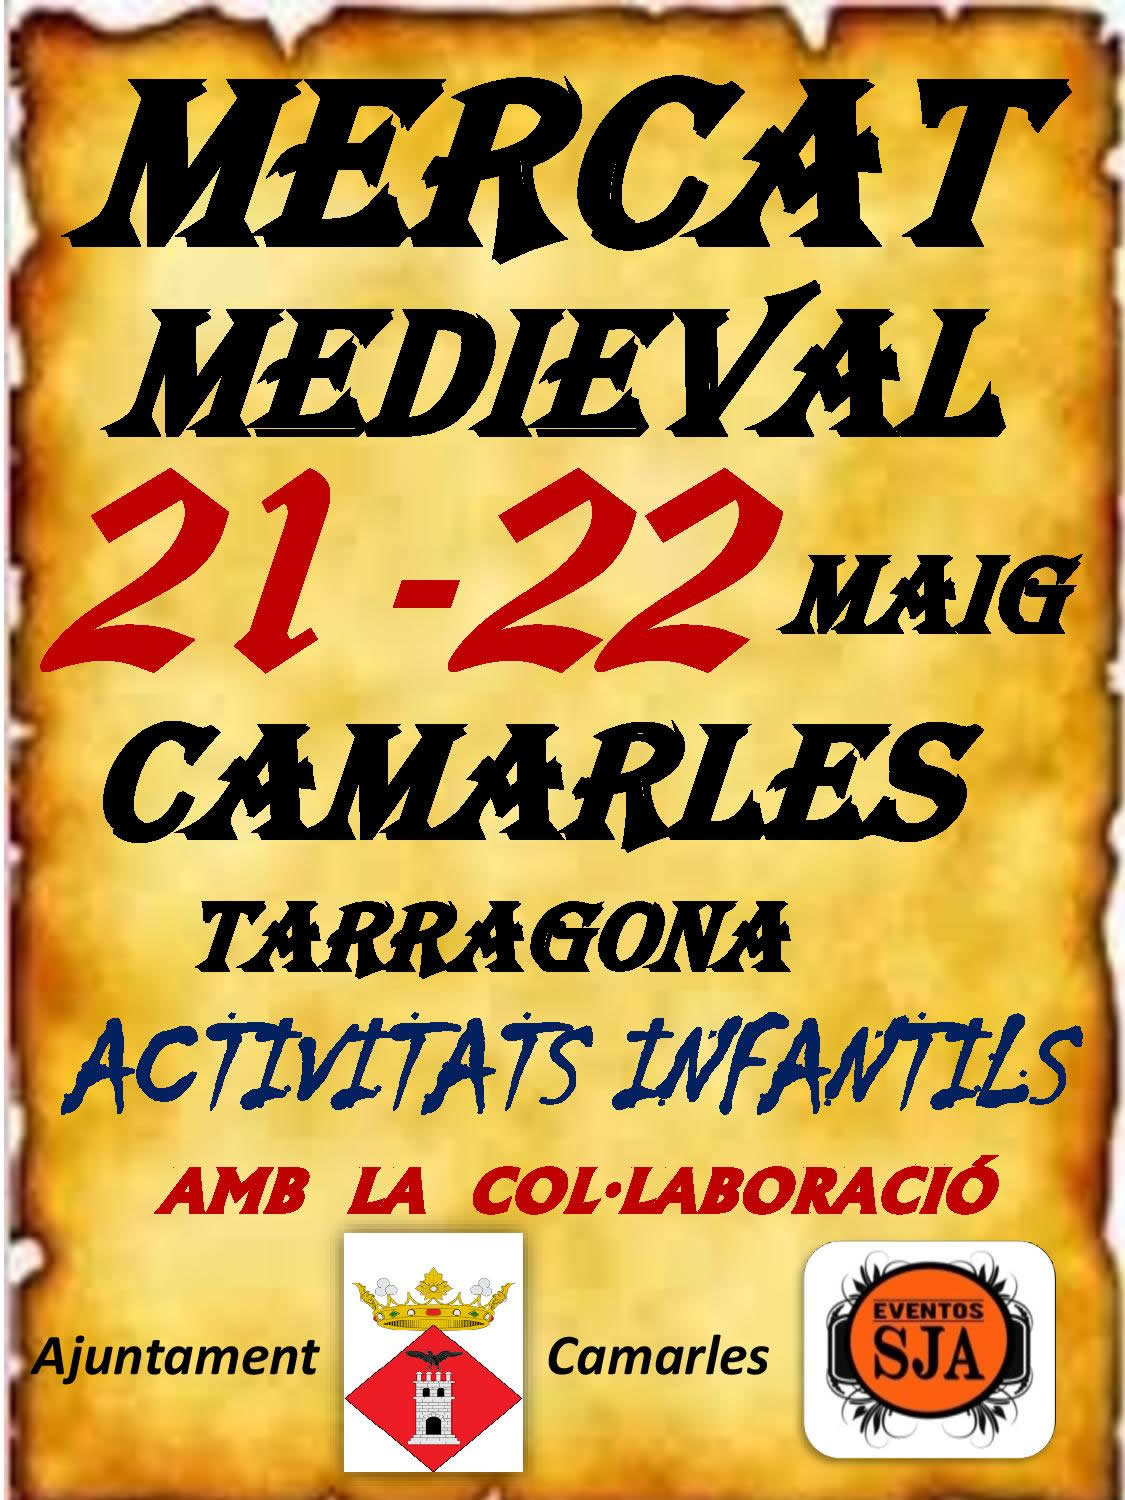 Feria medieval en Camarles, Tarragona 21 y 22 de Mayo del 2016